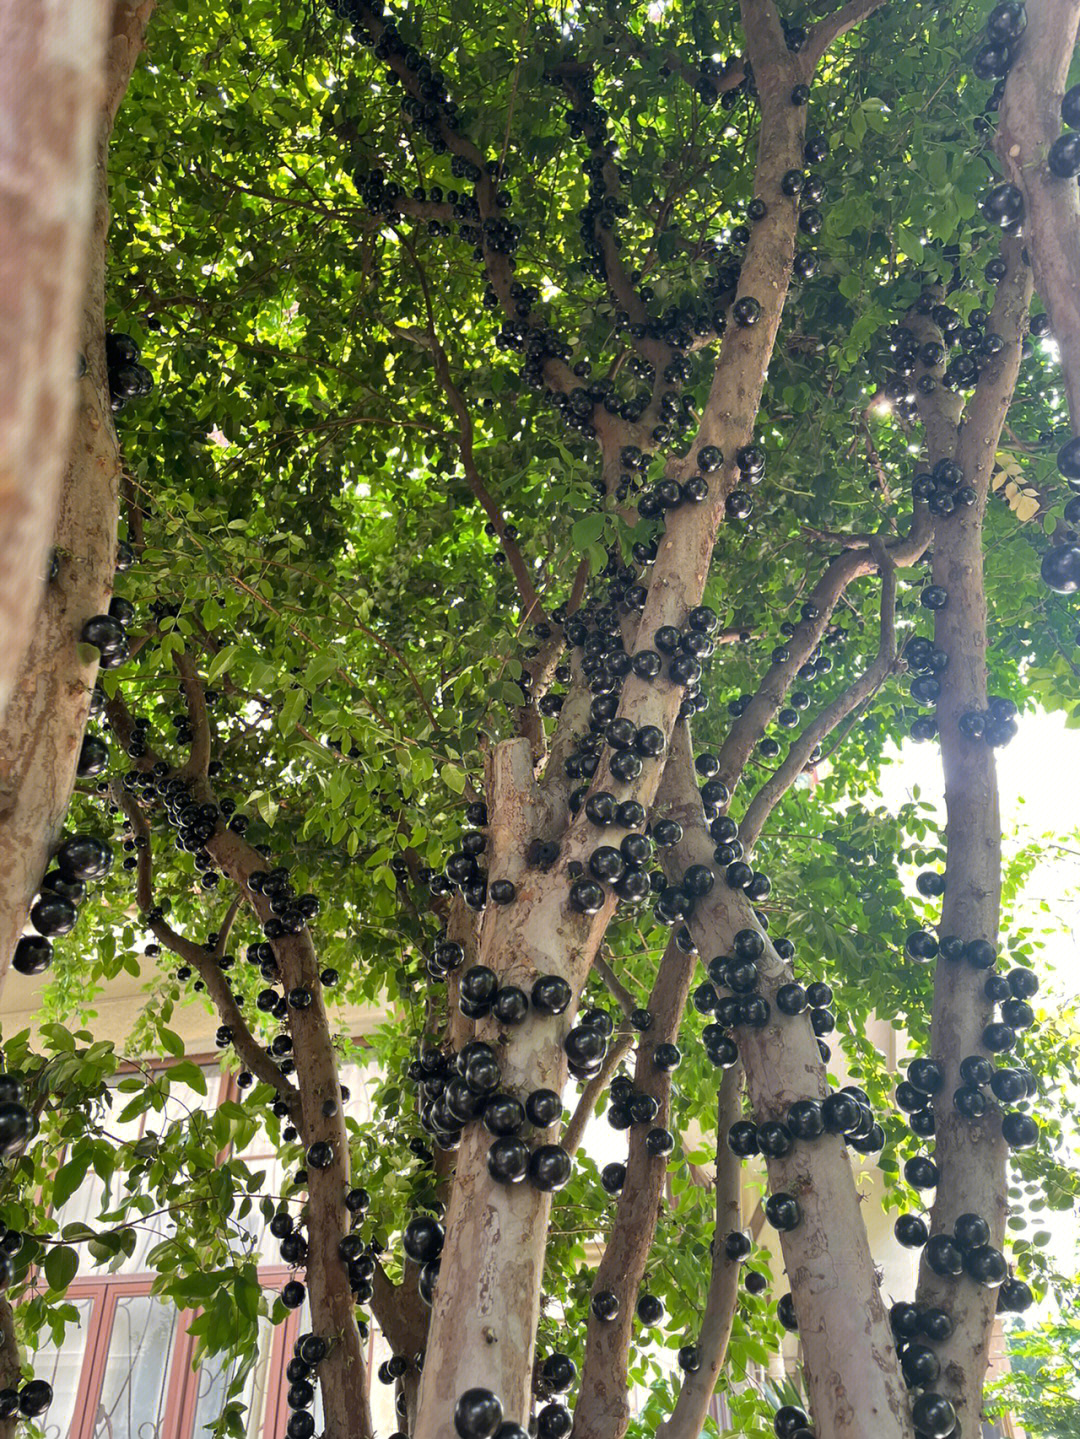 嘉宝果又叫拟爱神木,美味热带葡萄等,属于桃金娘科树番樱属植物